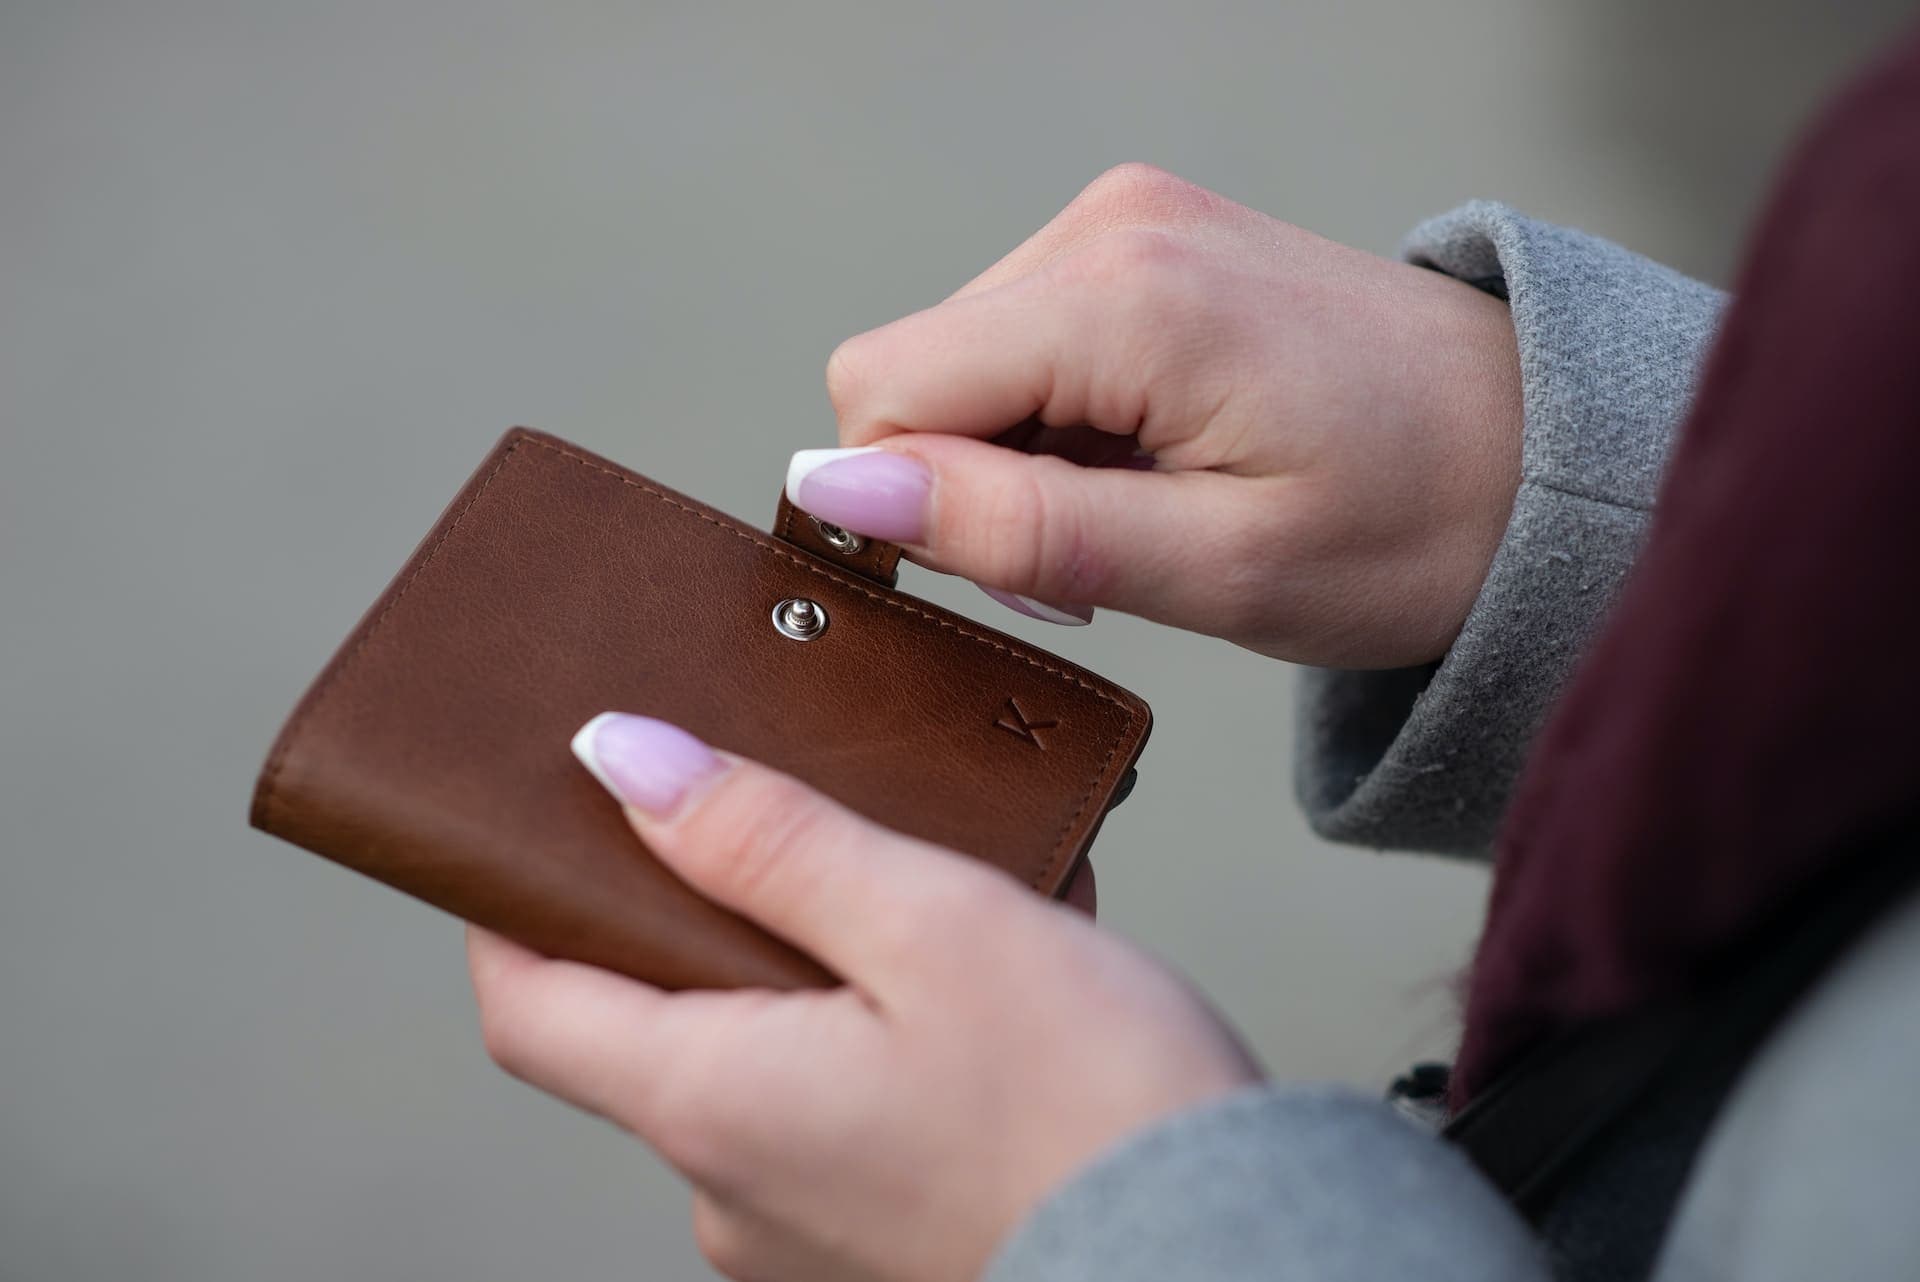 Жительница Чехии потеряла кошелек во время отпуска. Ей вернули его довольно нетрадиционным способом